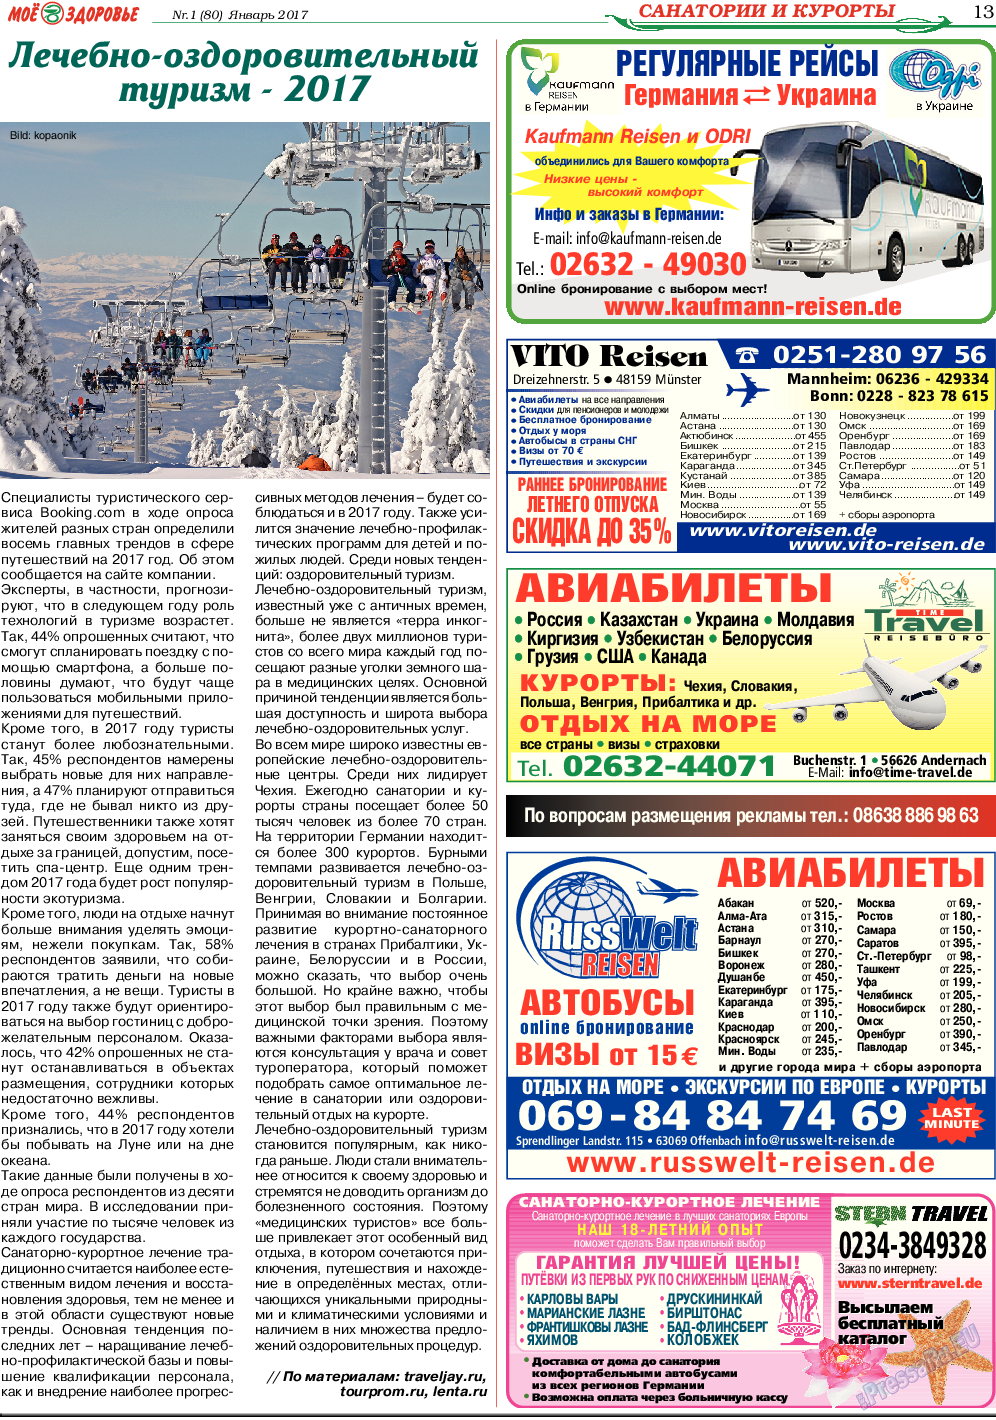 Кругозор, газета. 2017 №1 стр.13